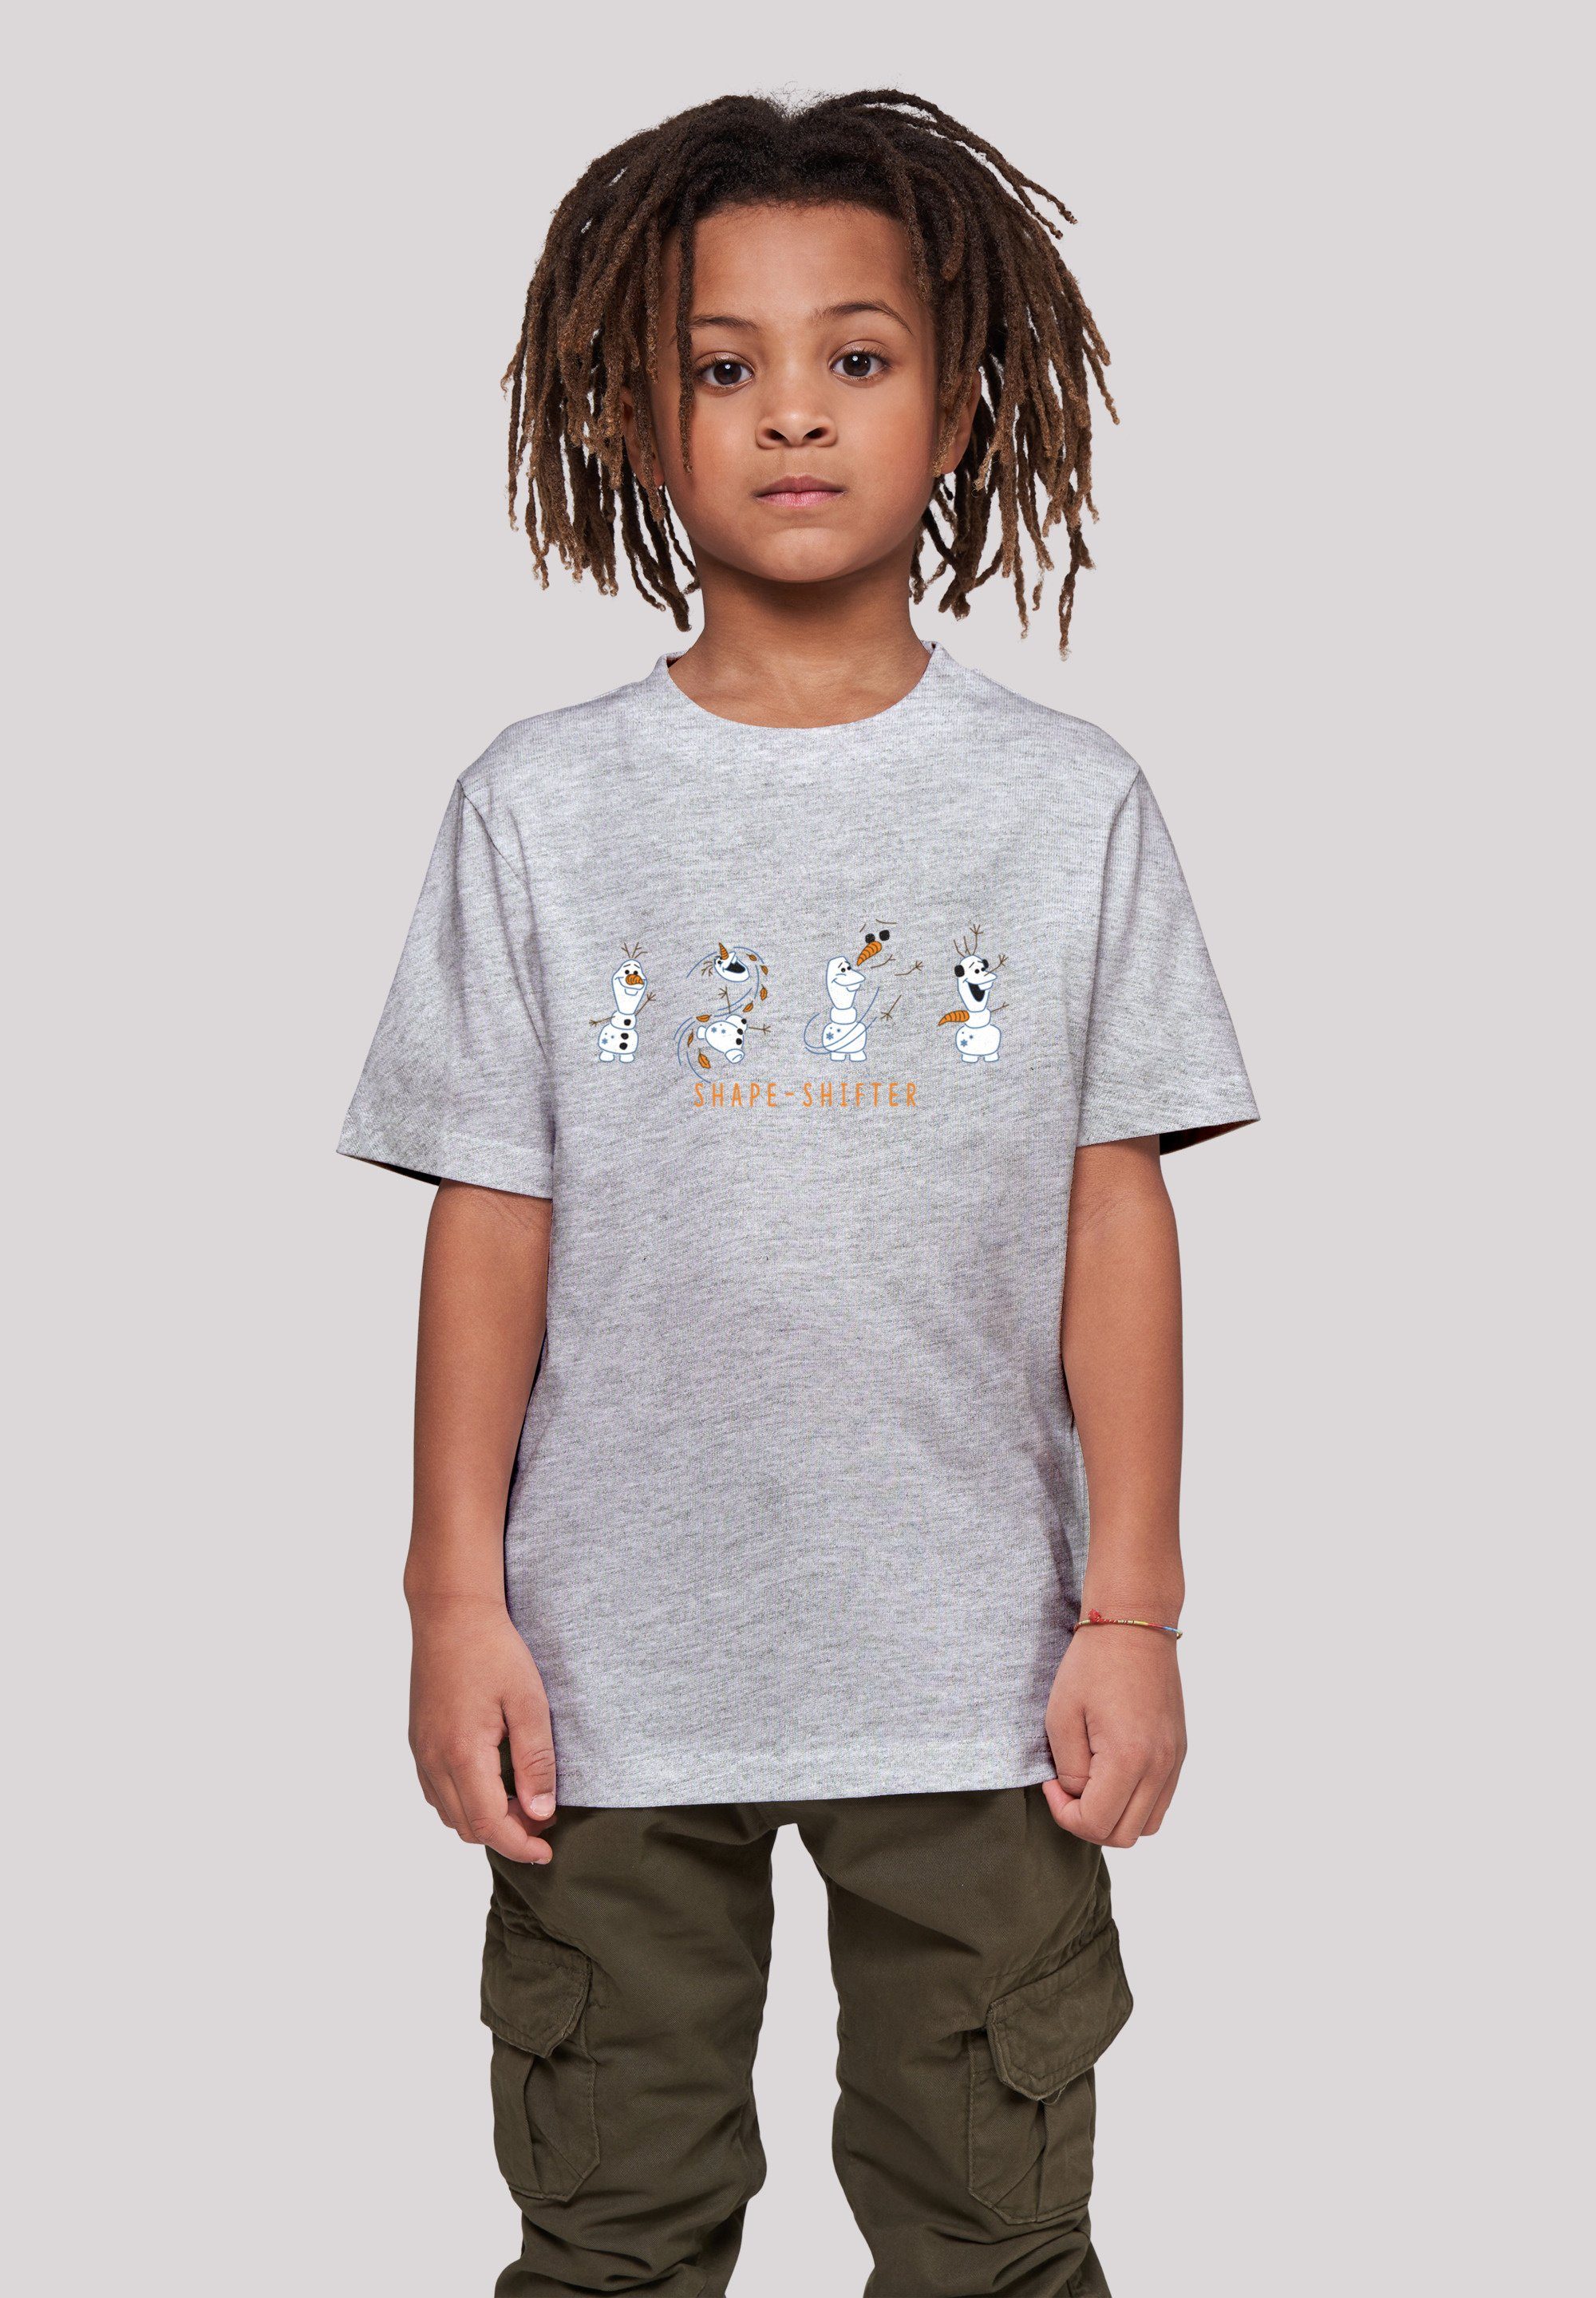 Shape-Shifter T-Shirt Bequemer wohlfühlen F4NT4STIC Frozen 2 Print, zum Disney rundum Olaf Schnitt